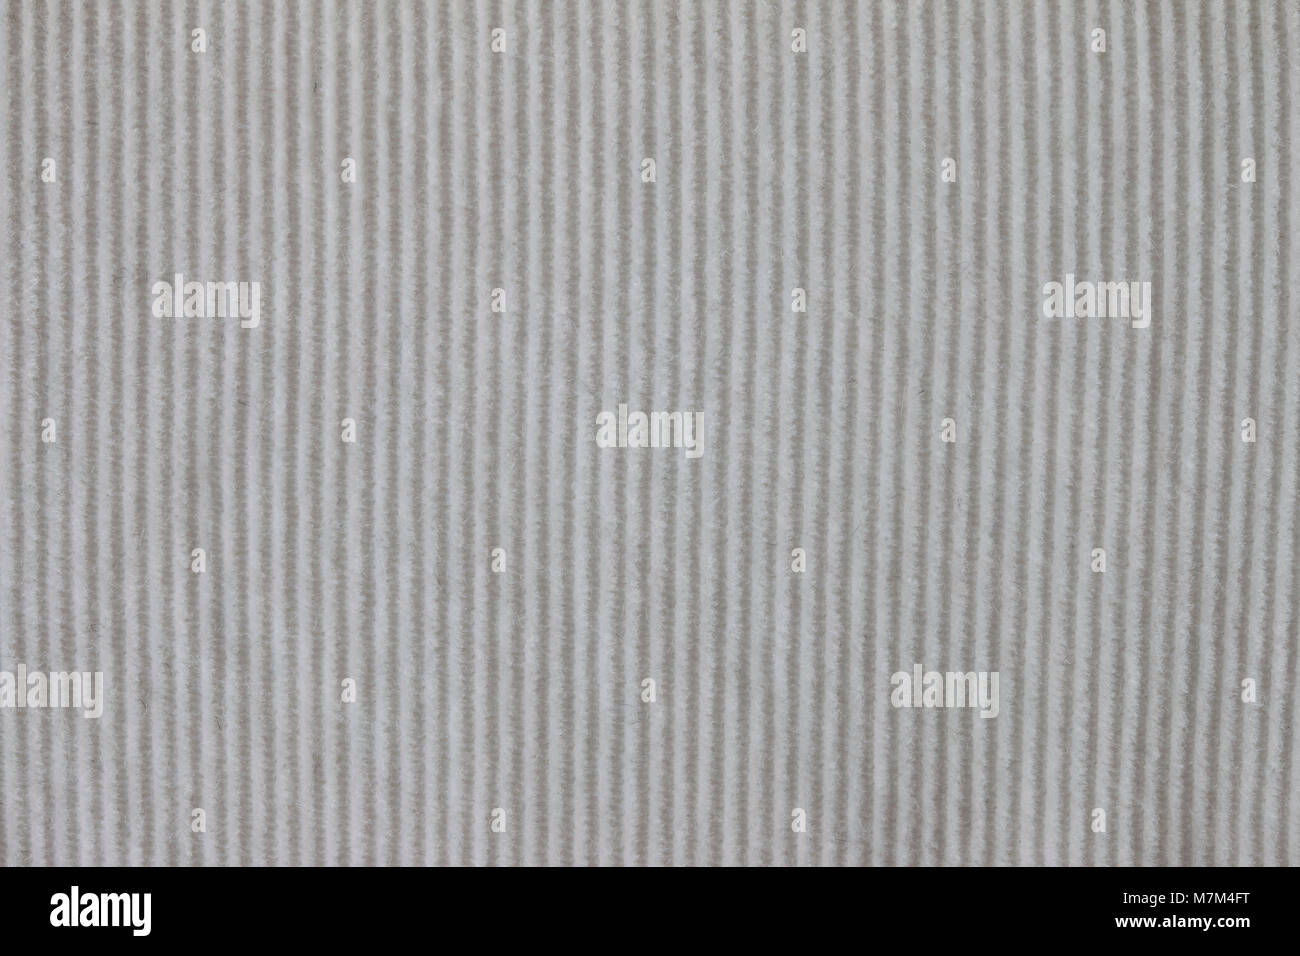 white corduroy textile closeup background Stock Photo